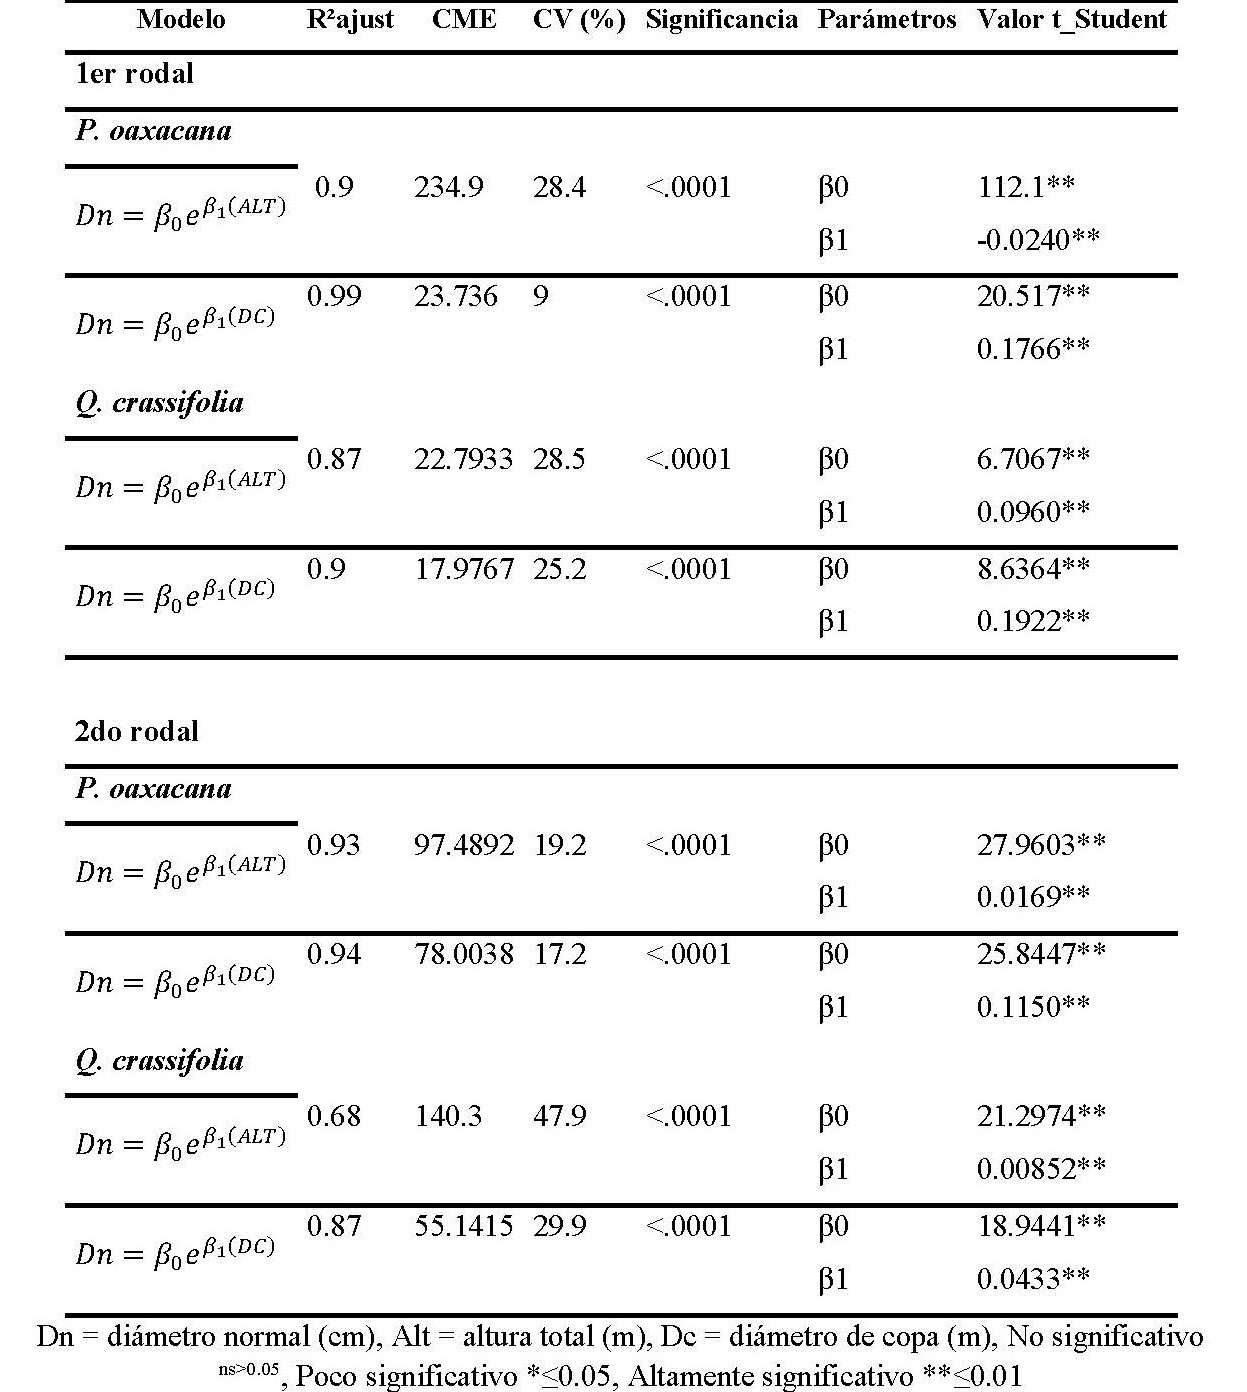  Modelos de regresión exponencial para la predicción del Dn, para Pinus oaxacana
y Quercus crassifolia con las variables altura (m) y diámetro de copa (m)
para los rodales bajo manejo de Santa Catarina Ixtepeji